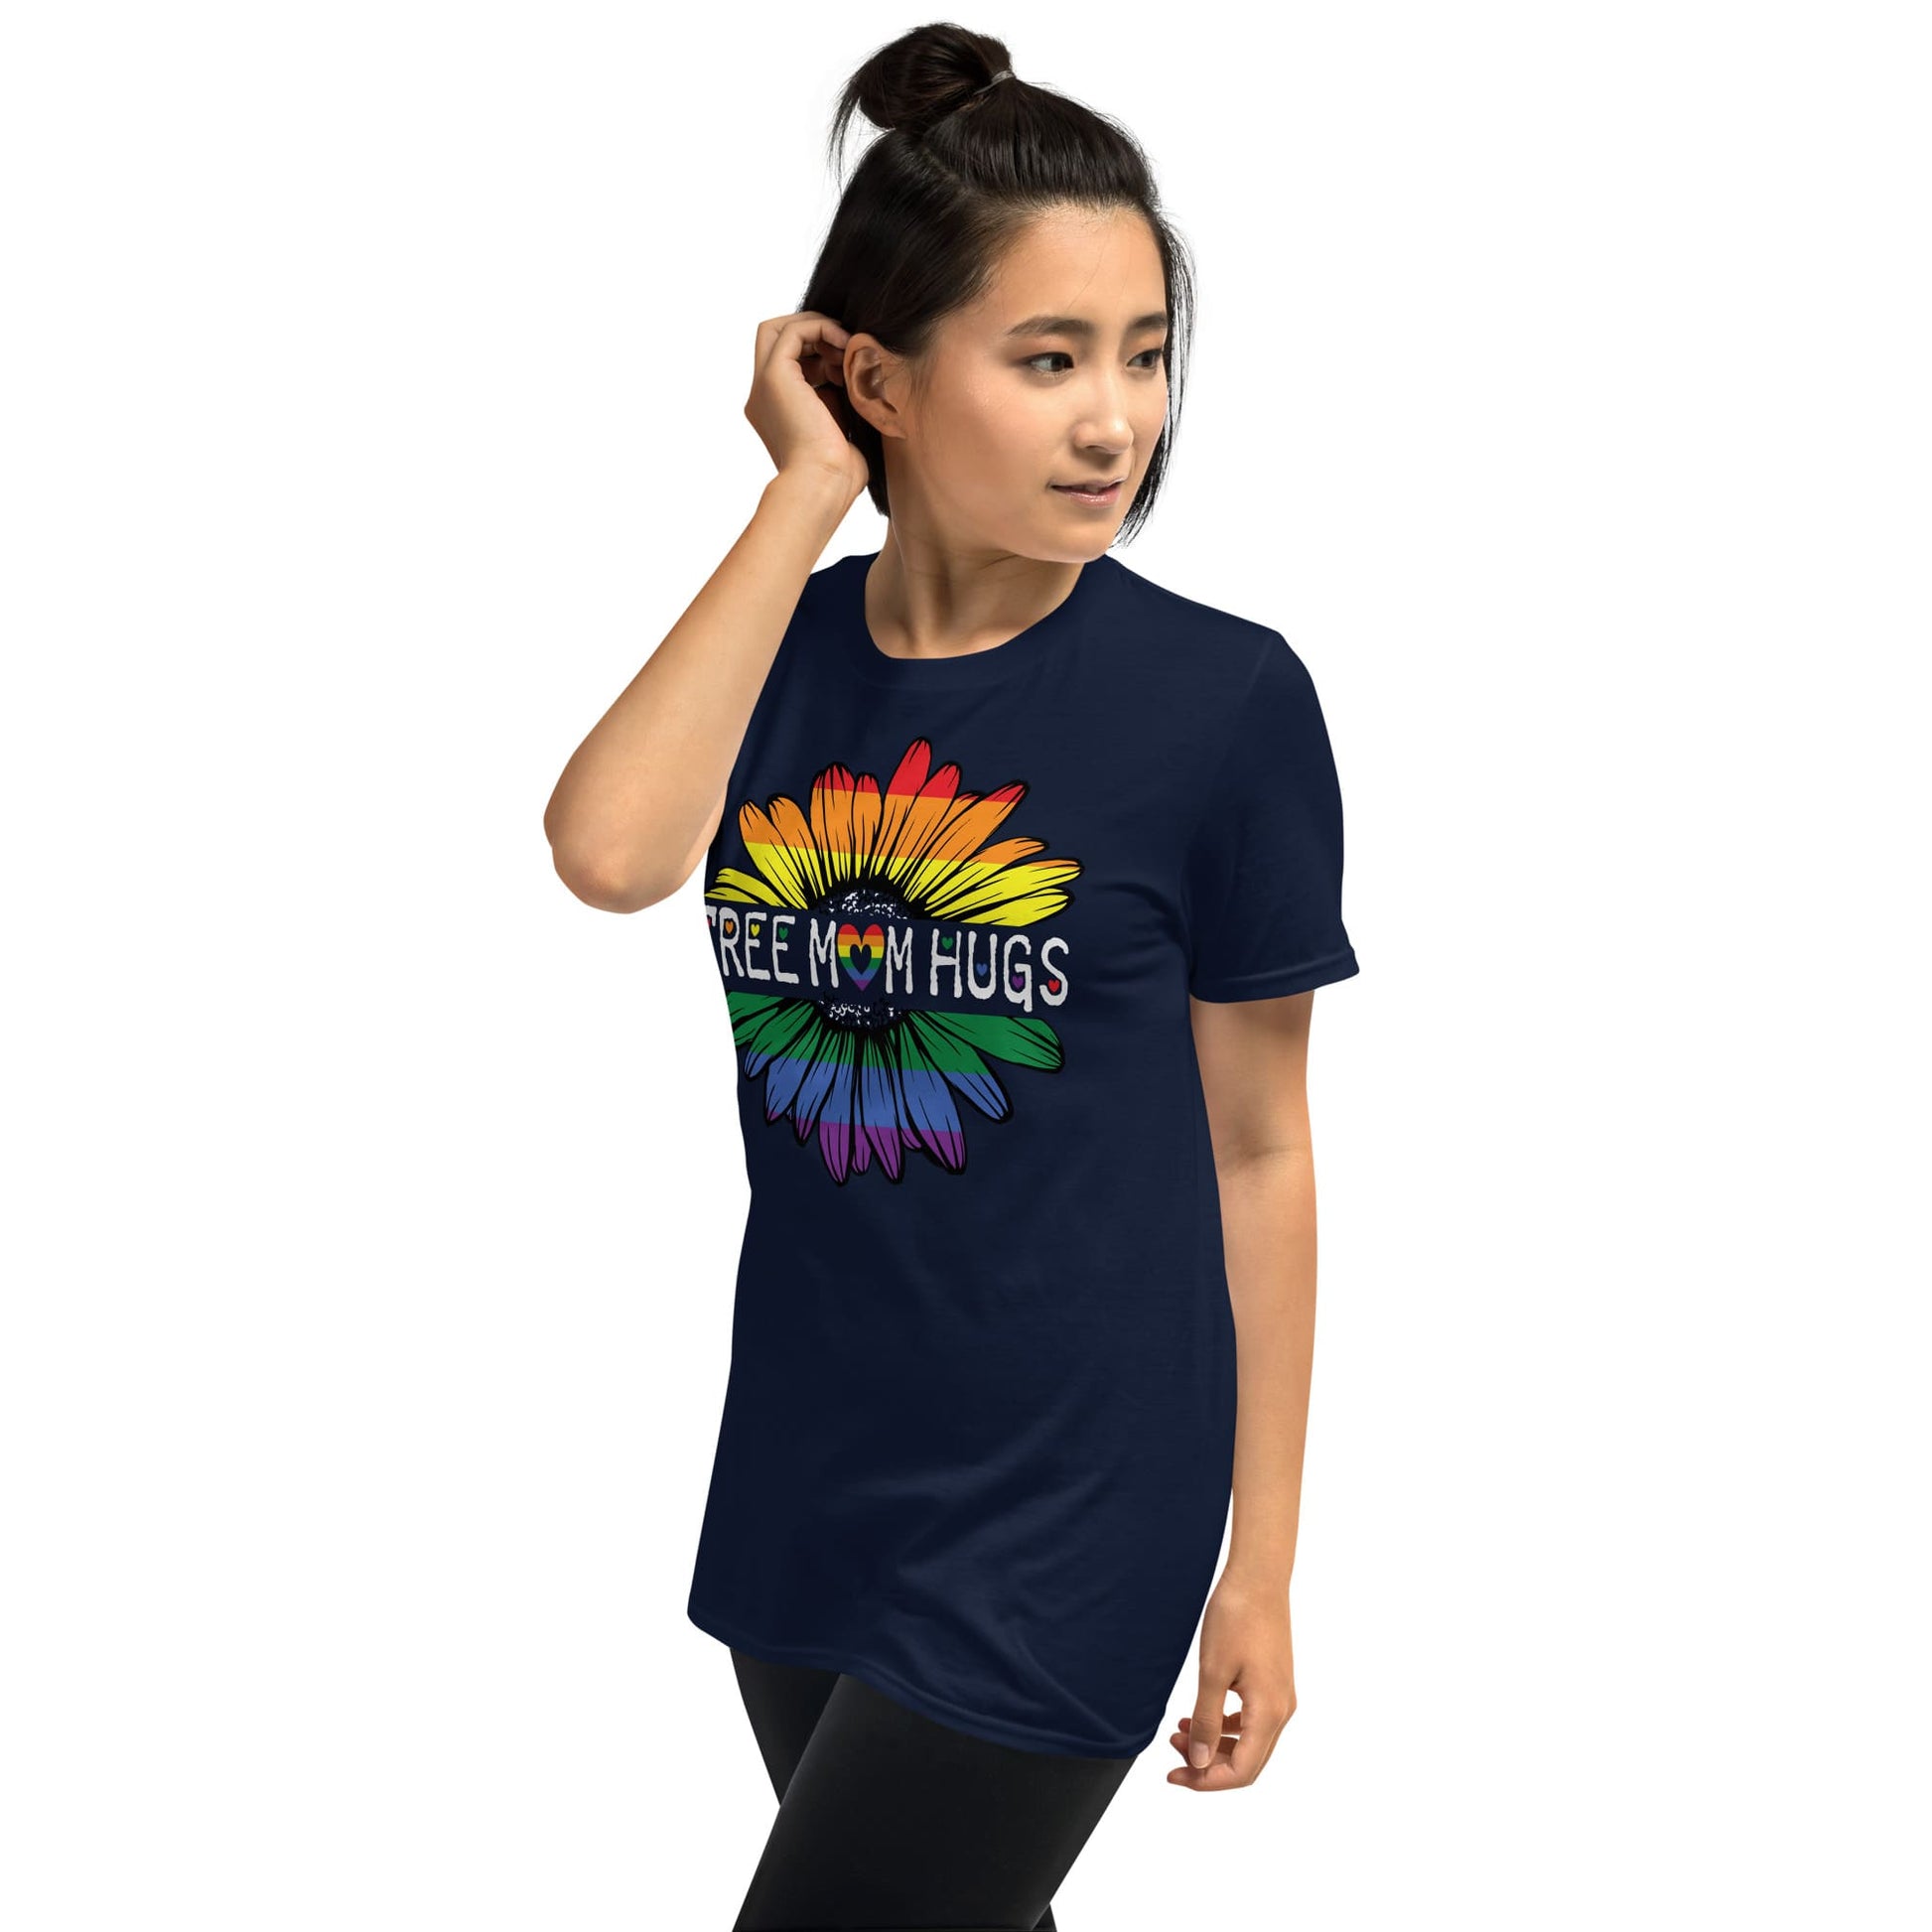 LGBTQ ally shirt, free mom hugs rainbow pride, model navy